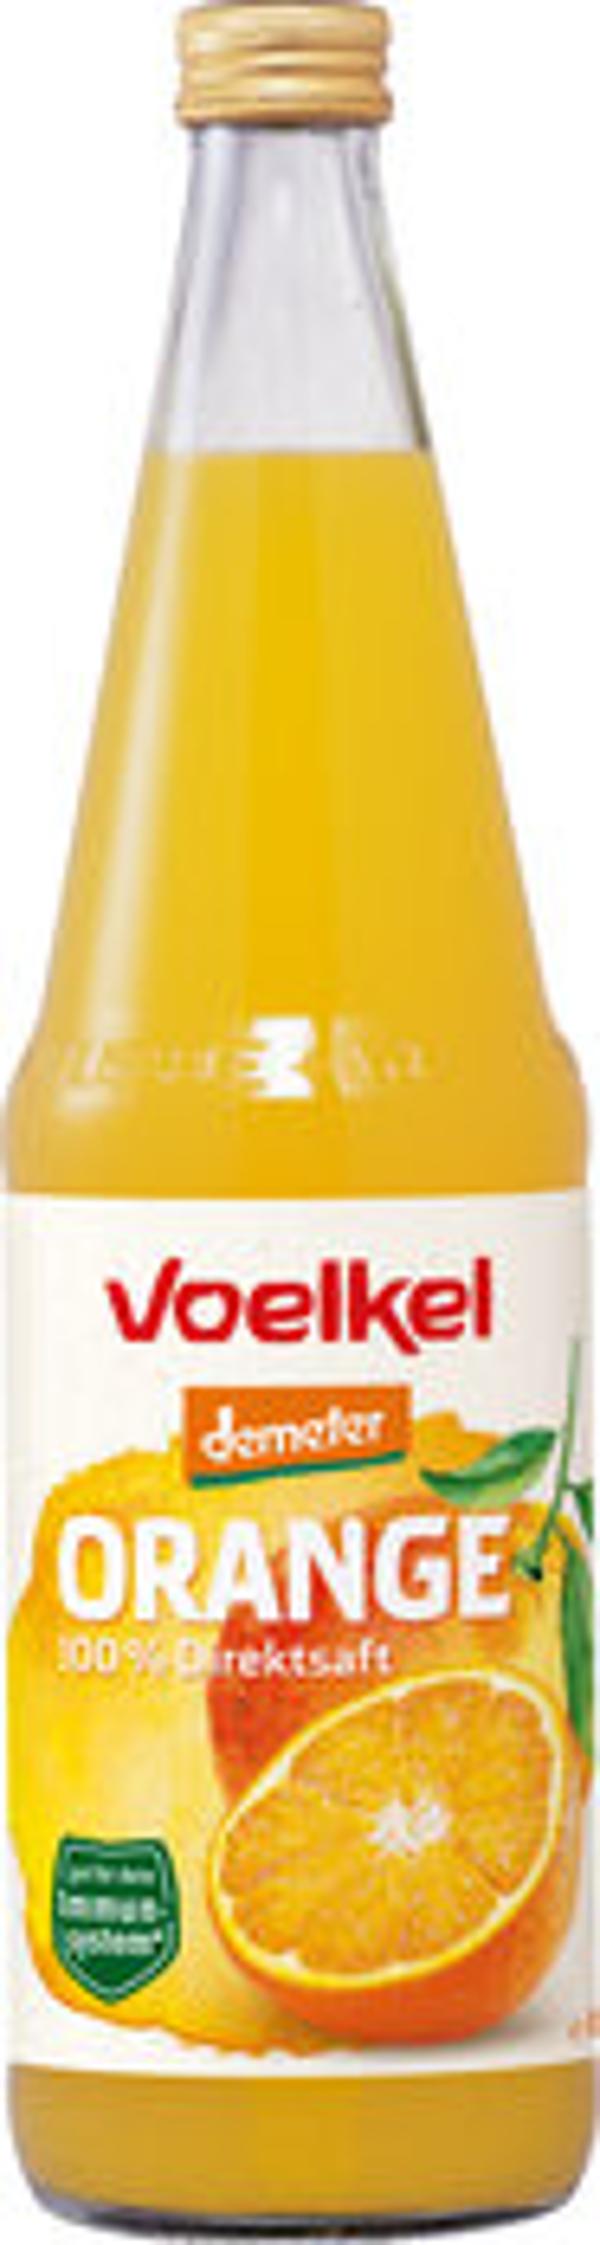 Produktbild von Voelkel Orangensaft 0,7l